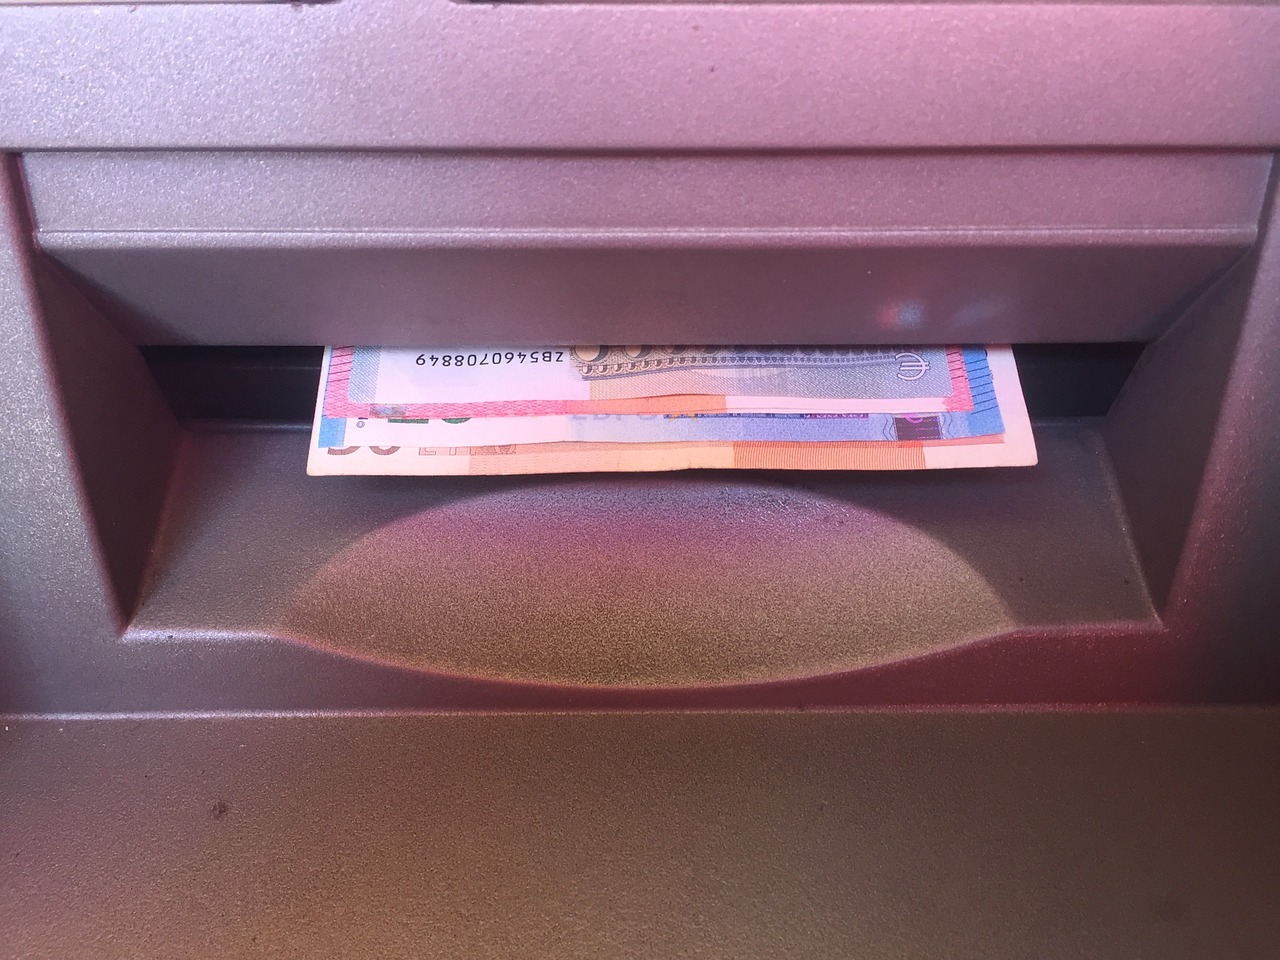 Banconote euro erogate dallo sportello automatico Bancomat